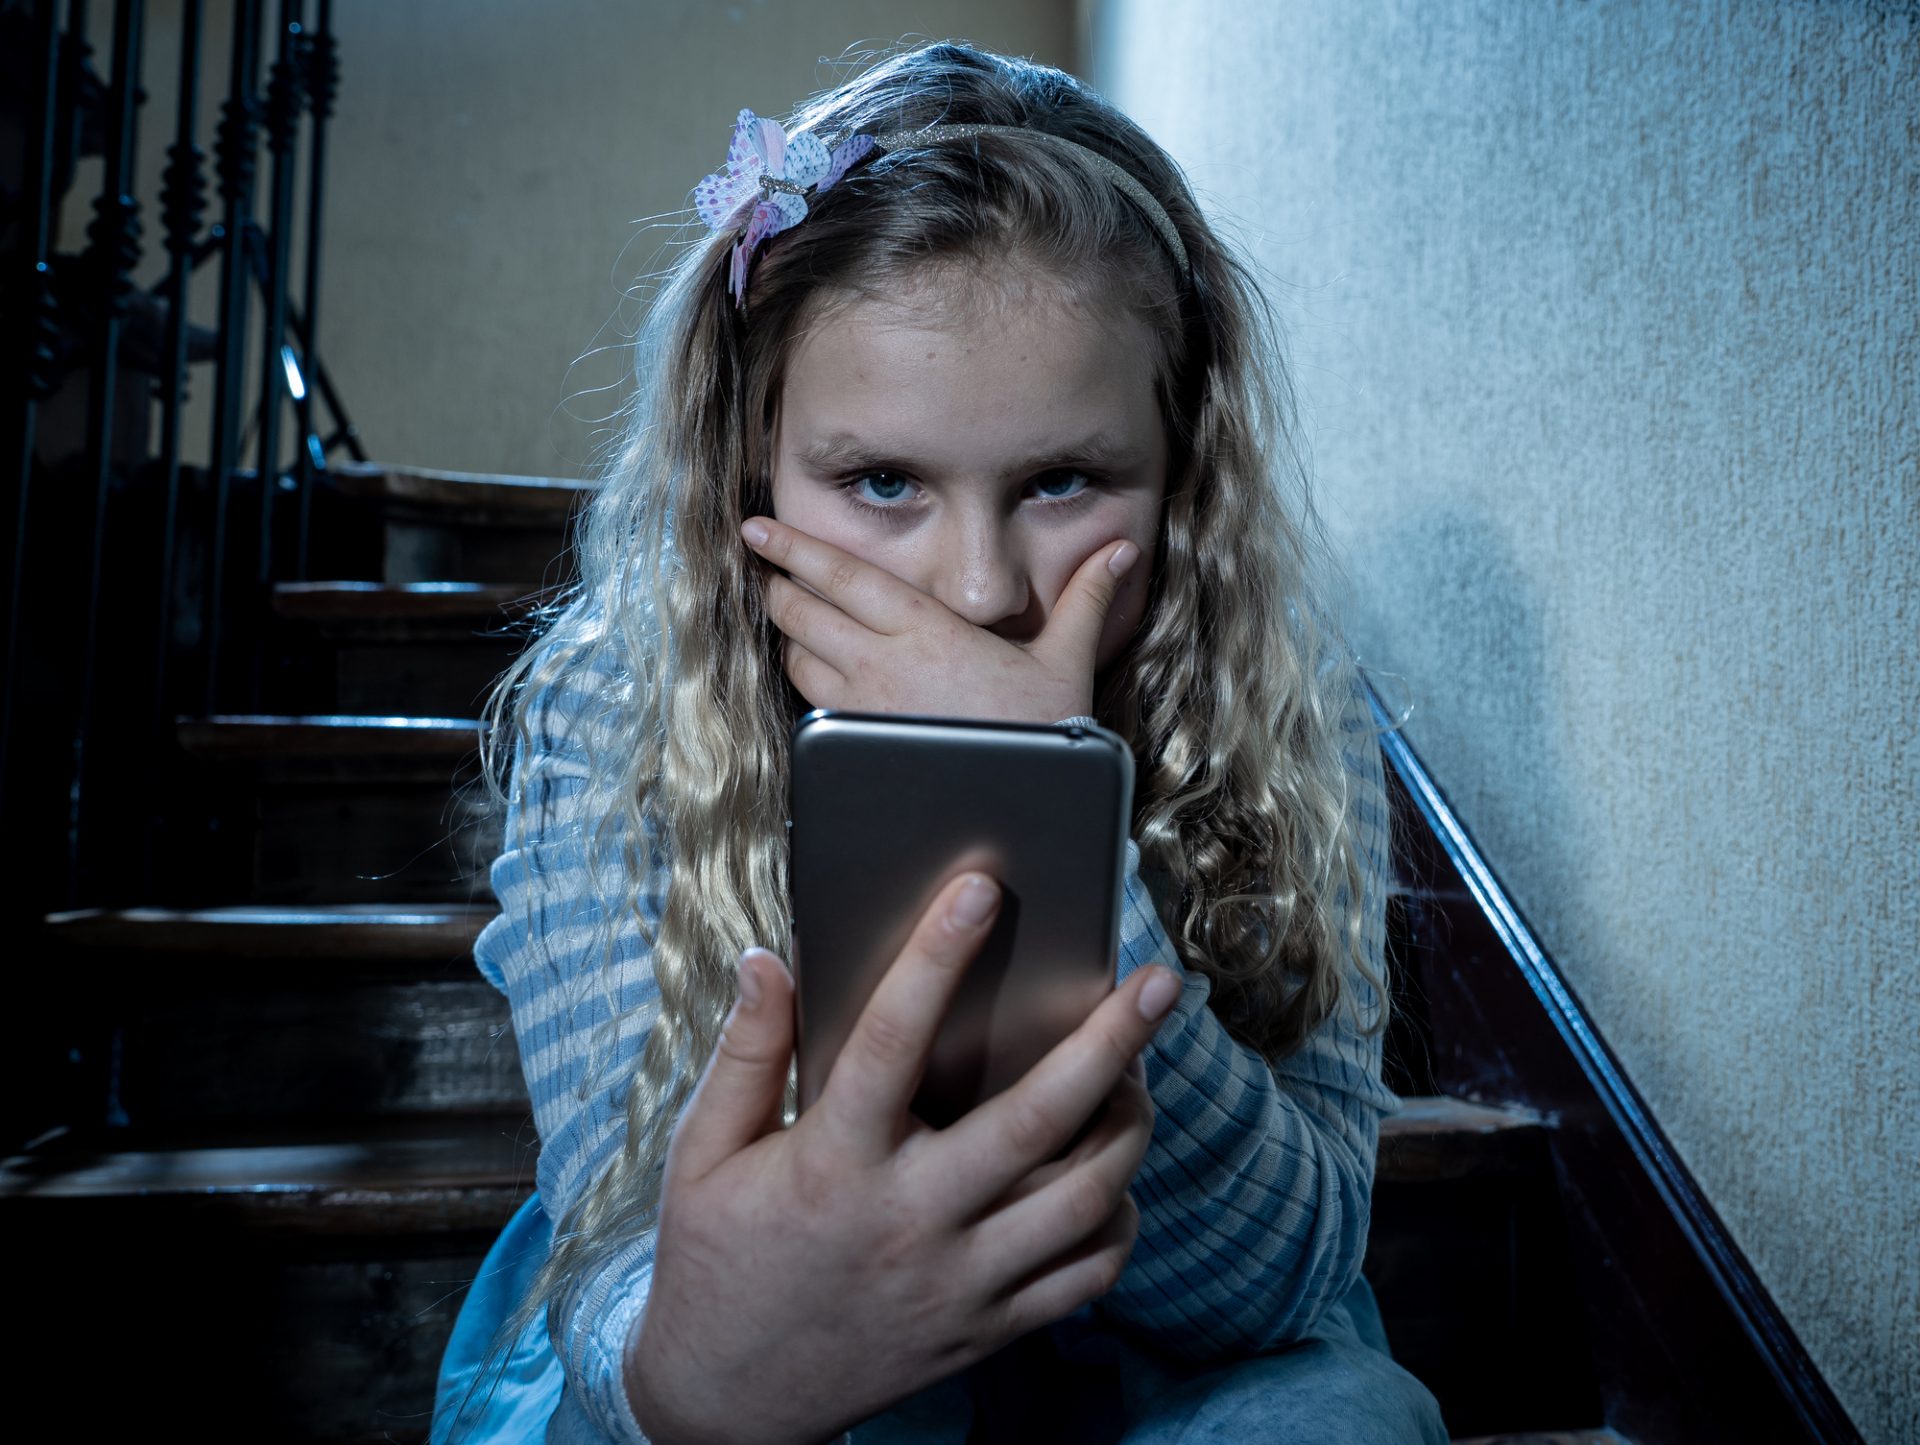 Az elmúlt hónapokban a gyerekek 28%-a számolt be internetes zaklatásról. Fotó: Depositphotos